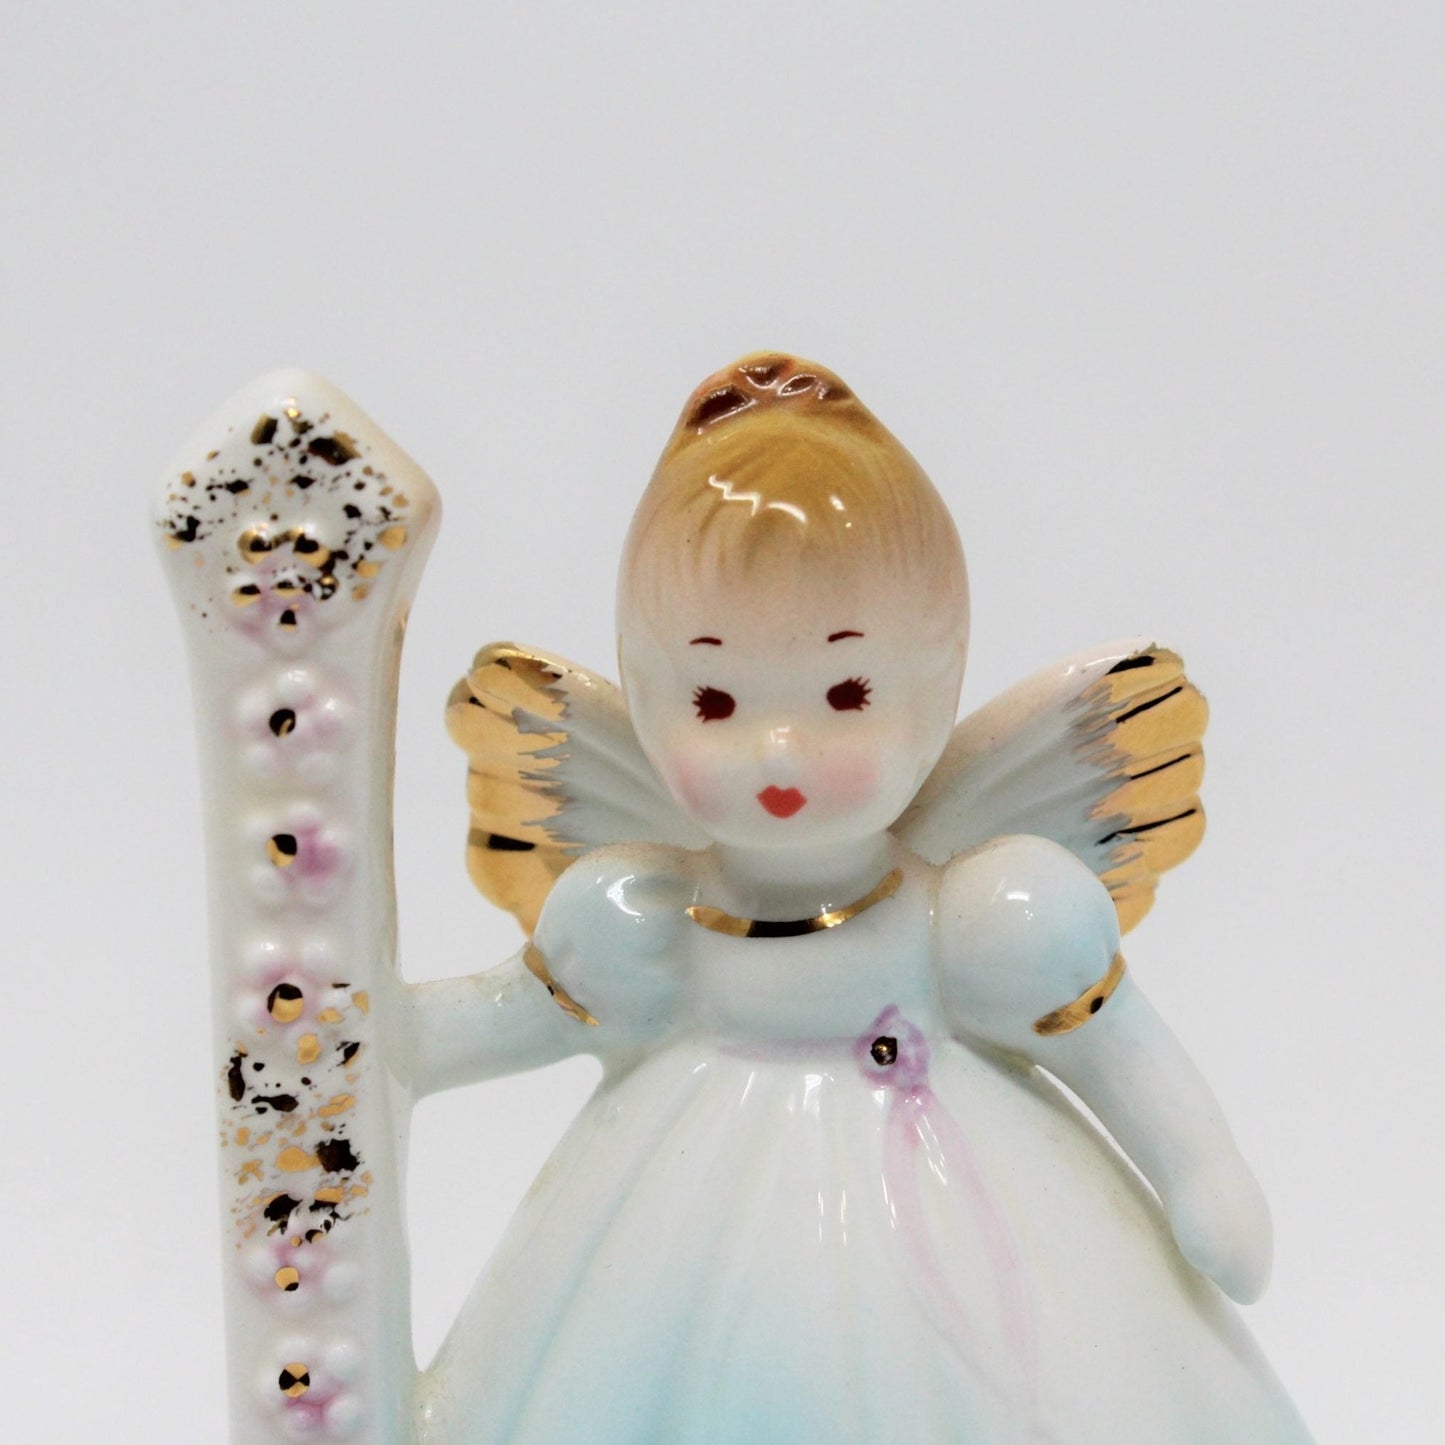 Figurine, Josef Originals Birthday Angel, 1 Year, Blue Dress, Vintage